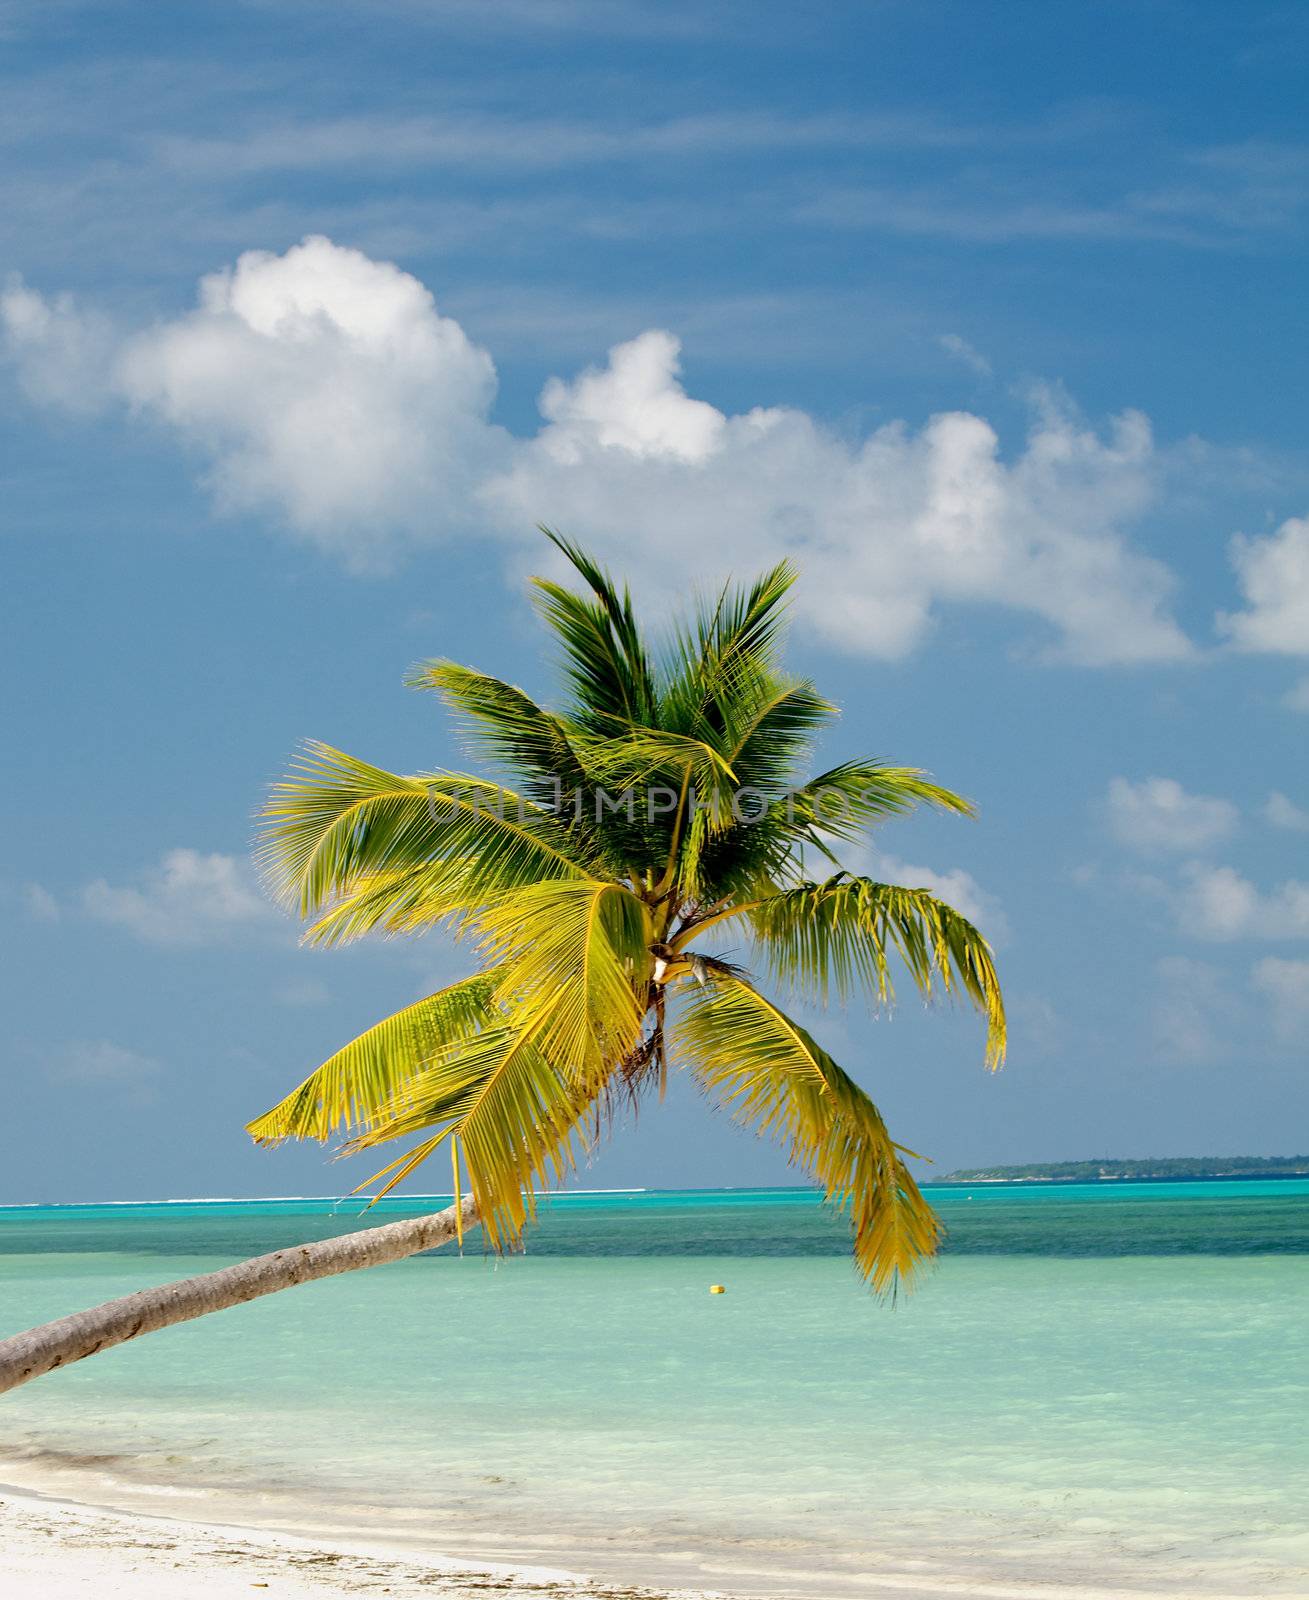 Palm Tree on Ocean Beach by zhekos